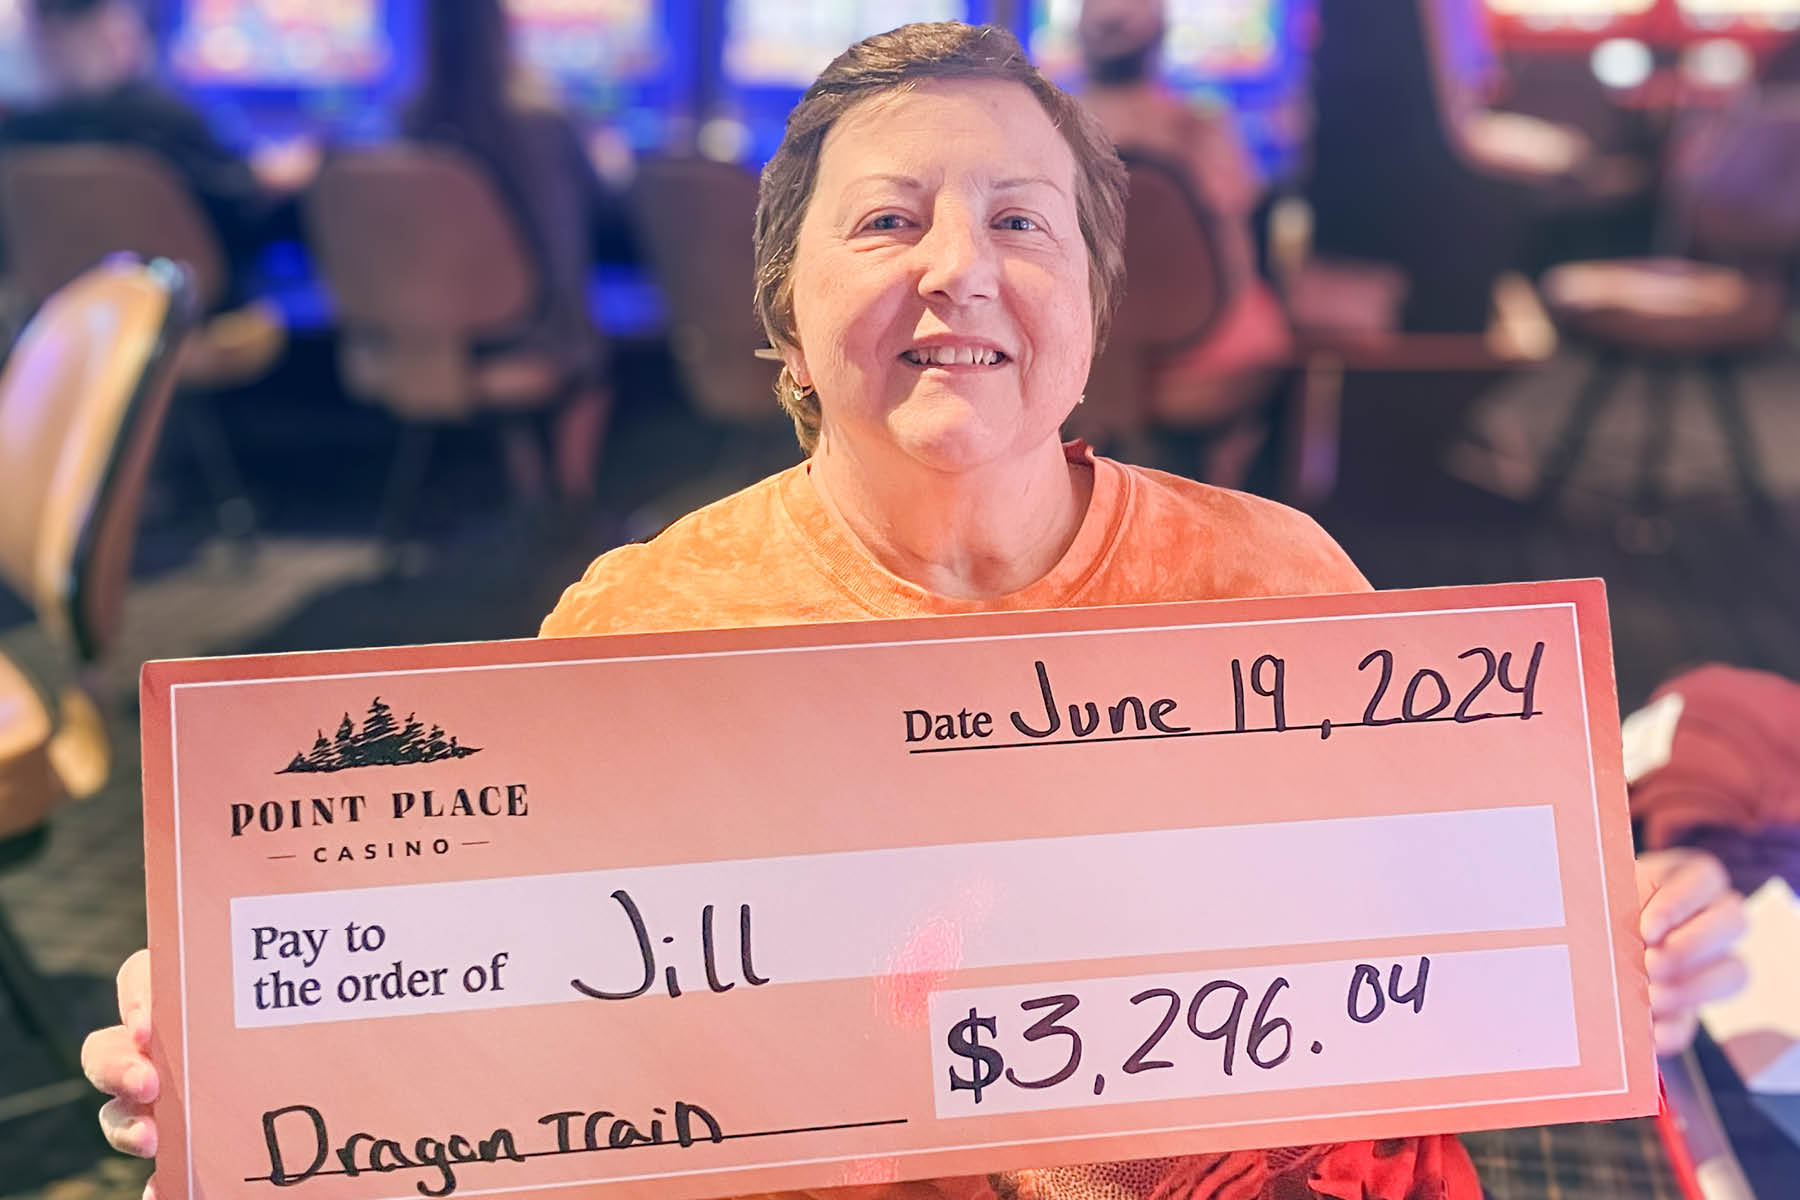 Jill won $3,296